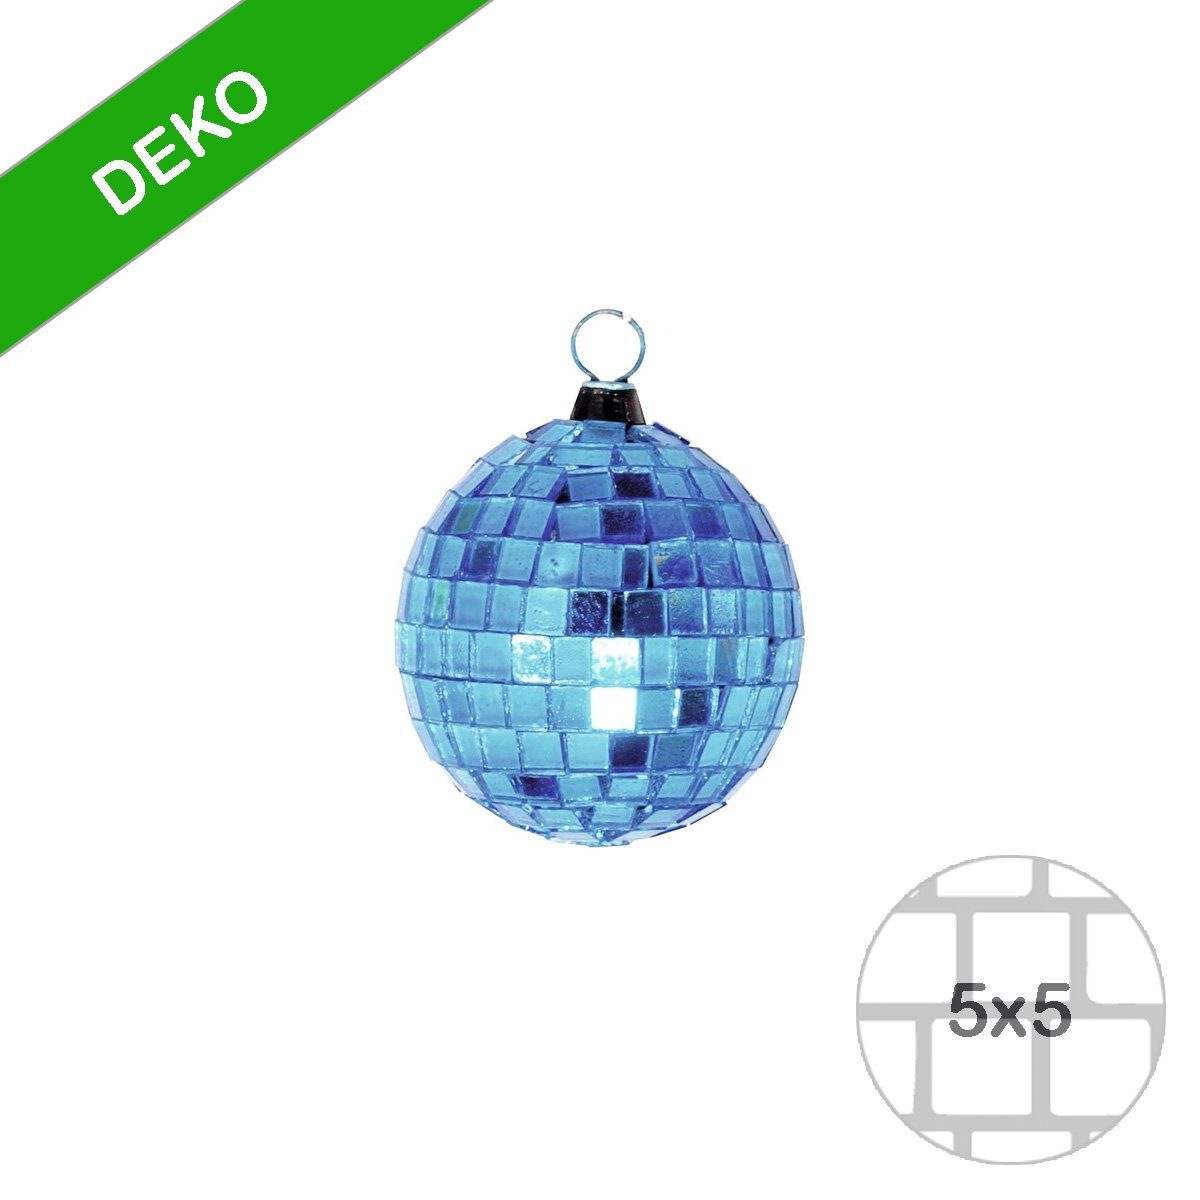 Disko Mini SATISFIRE 5cm Deko Discolicht coole Discokugel Party Spiegelkugel blau